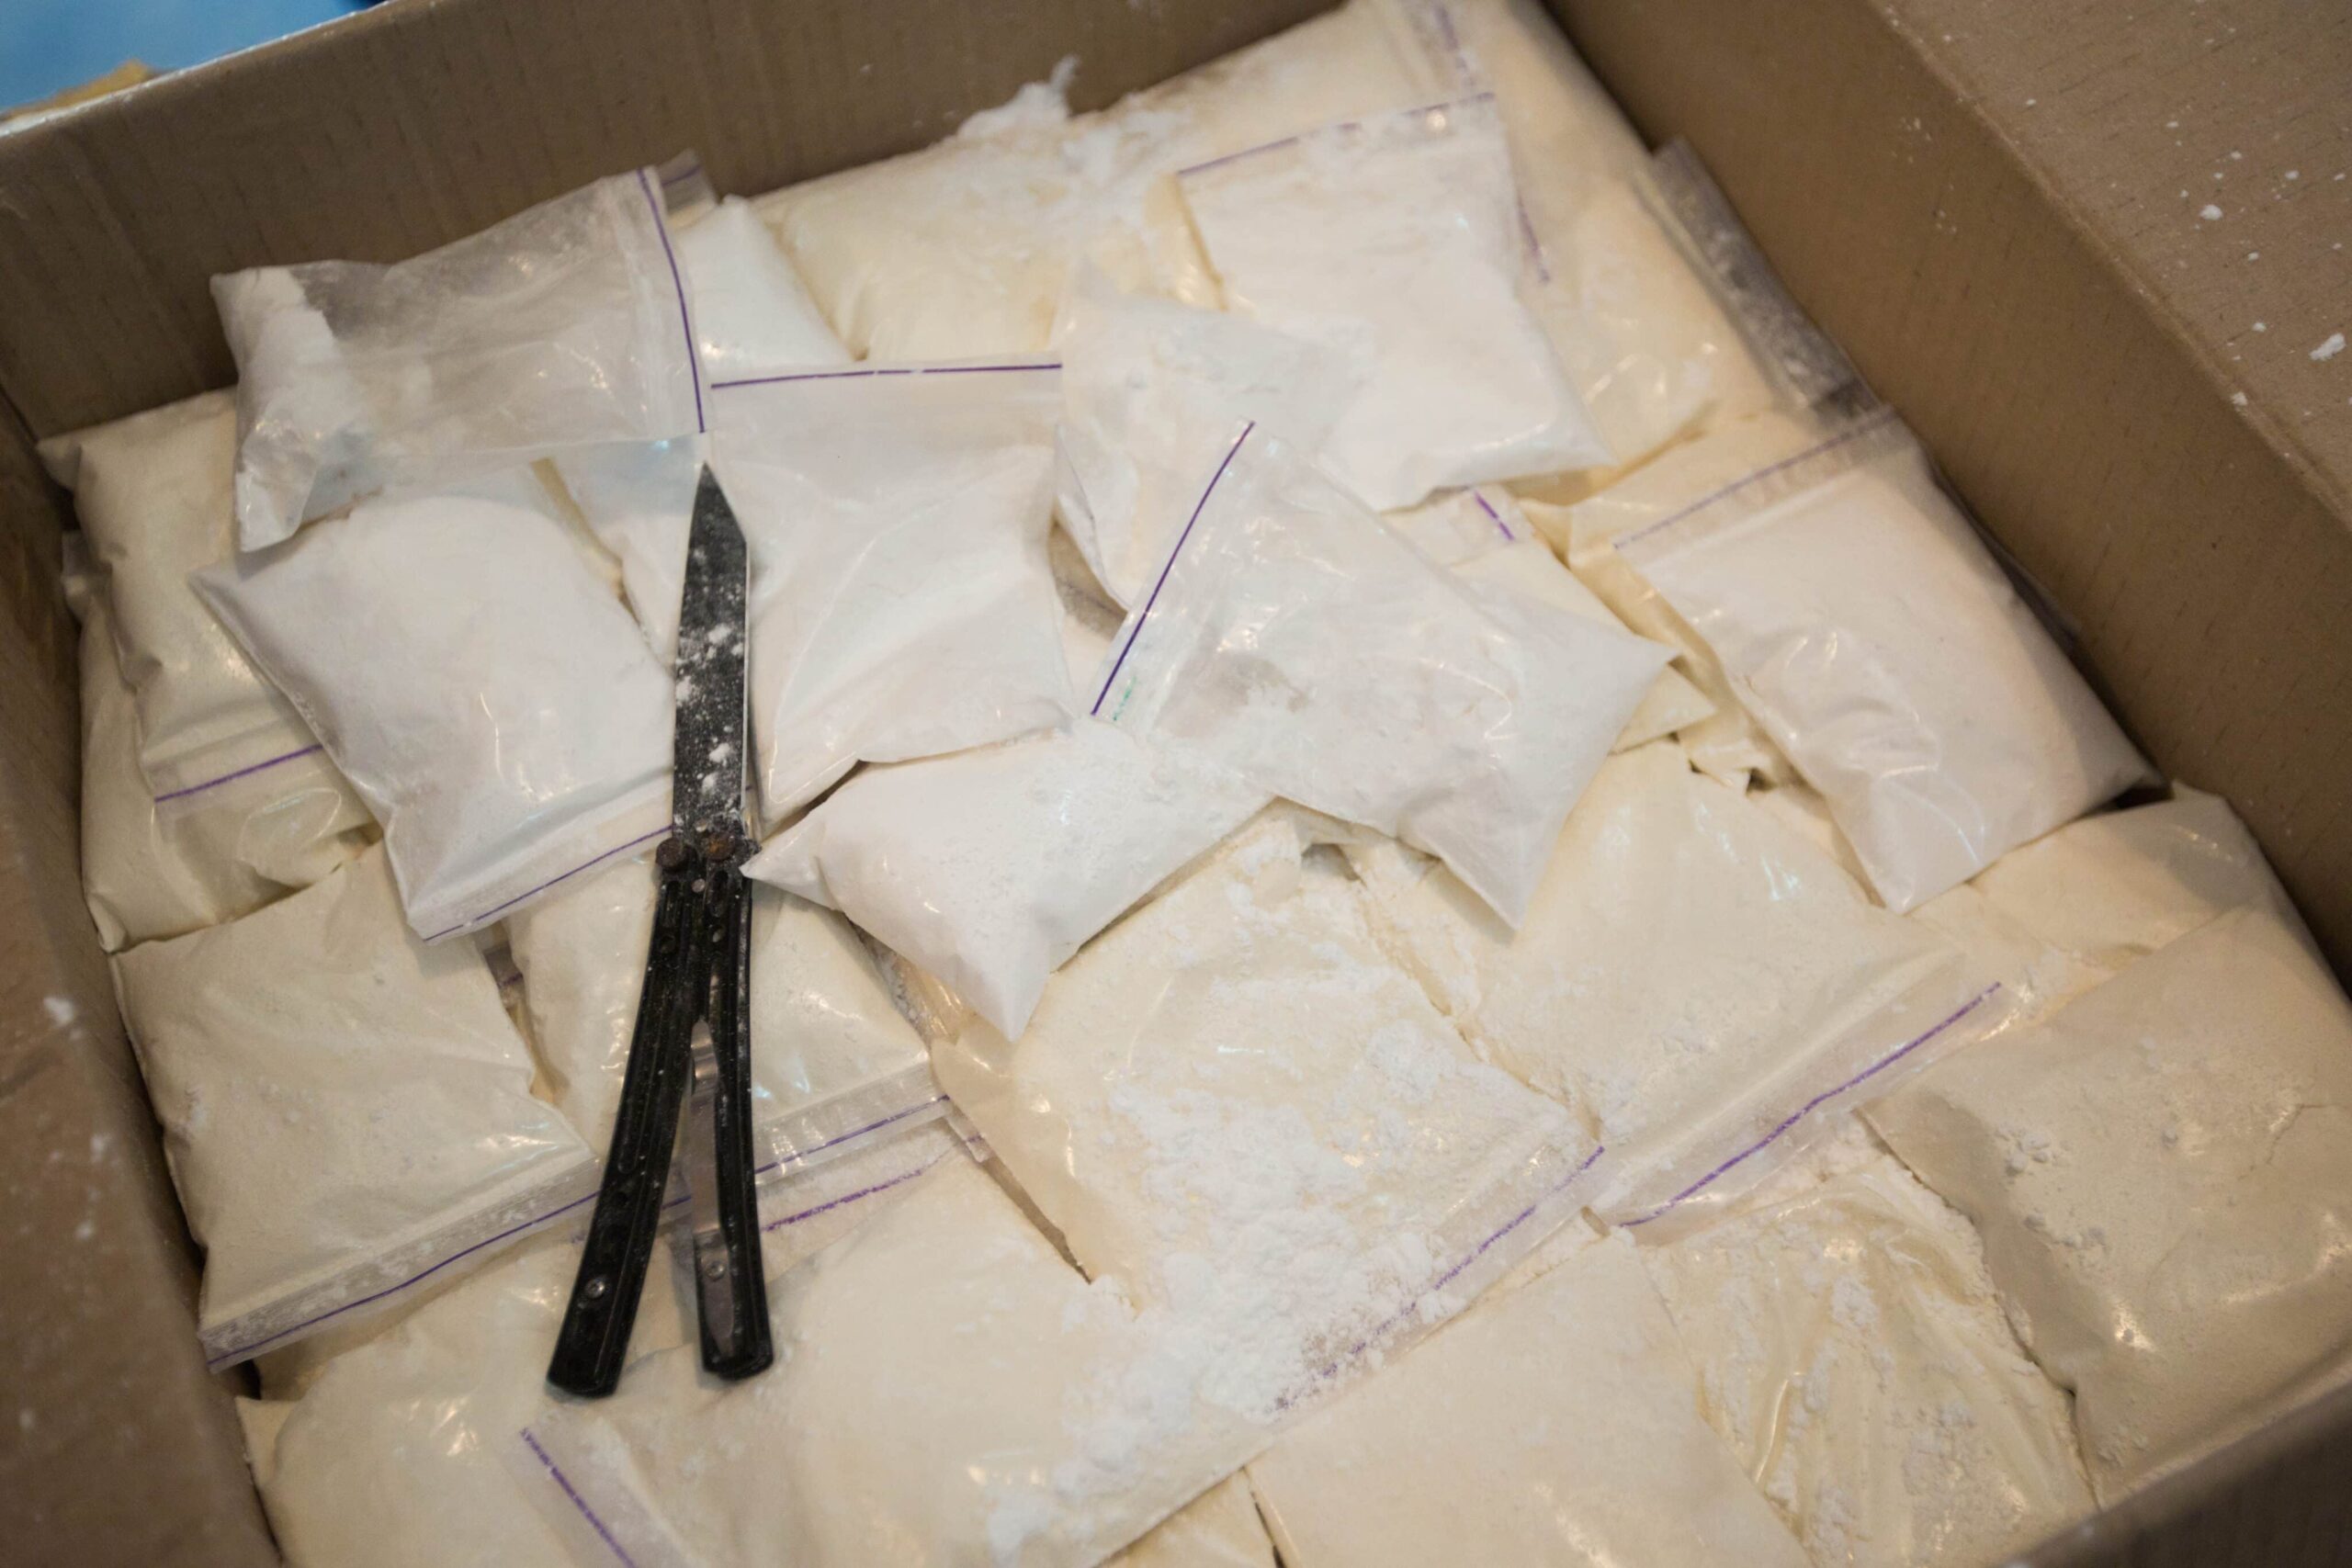 De politie van Hongkong neemt voor 83 miljoen dollar aan cocaïne en cannabis in beslag